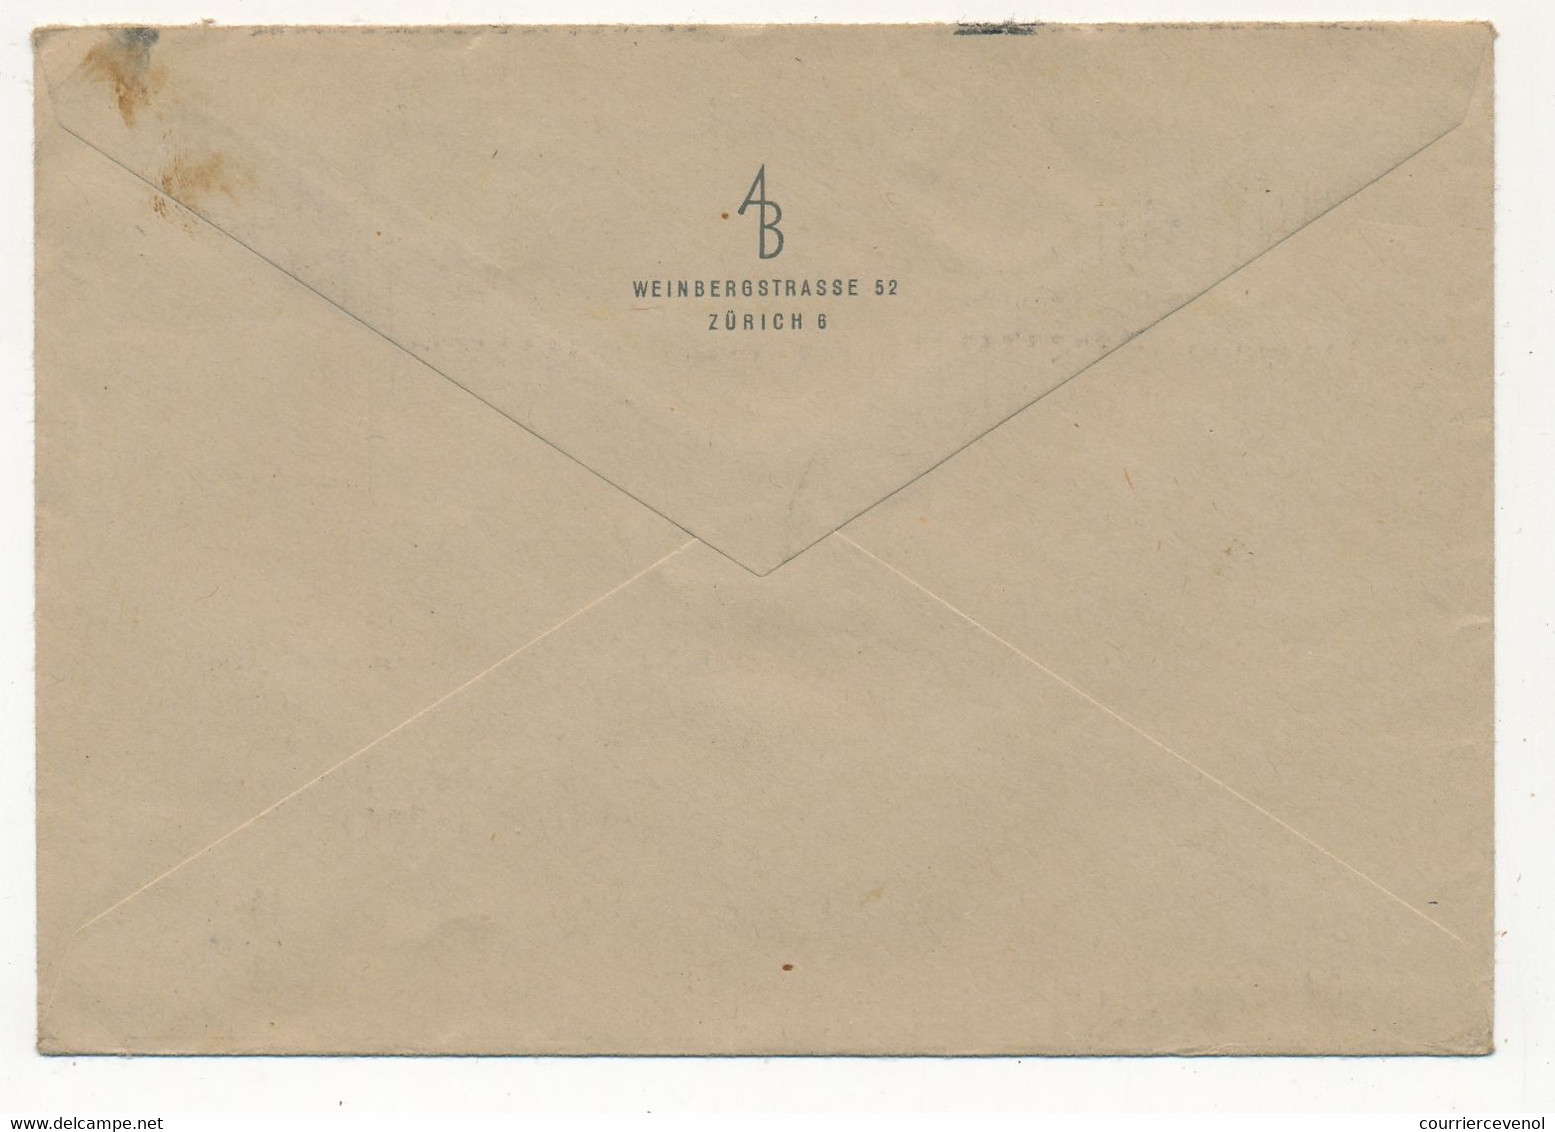 SUISSE - Lot 6 Enveloppes Affranchissements Divers, Composés, 1947 Et 1948 - Storia Postale